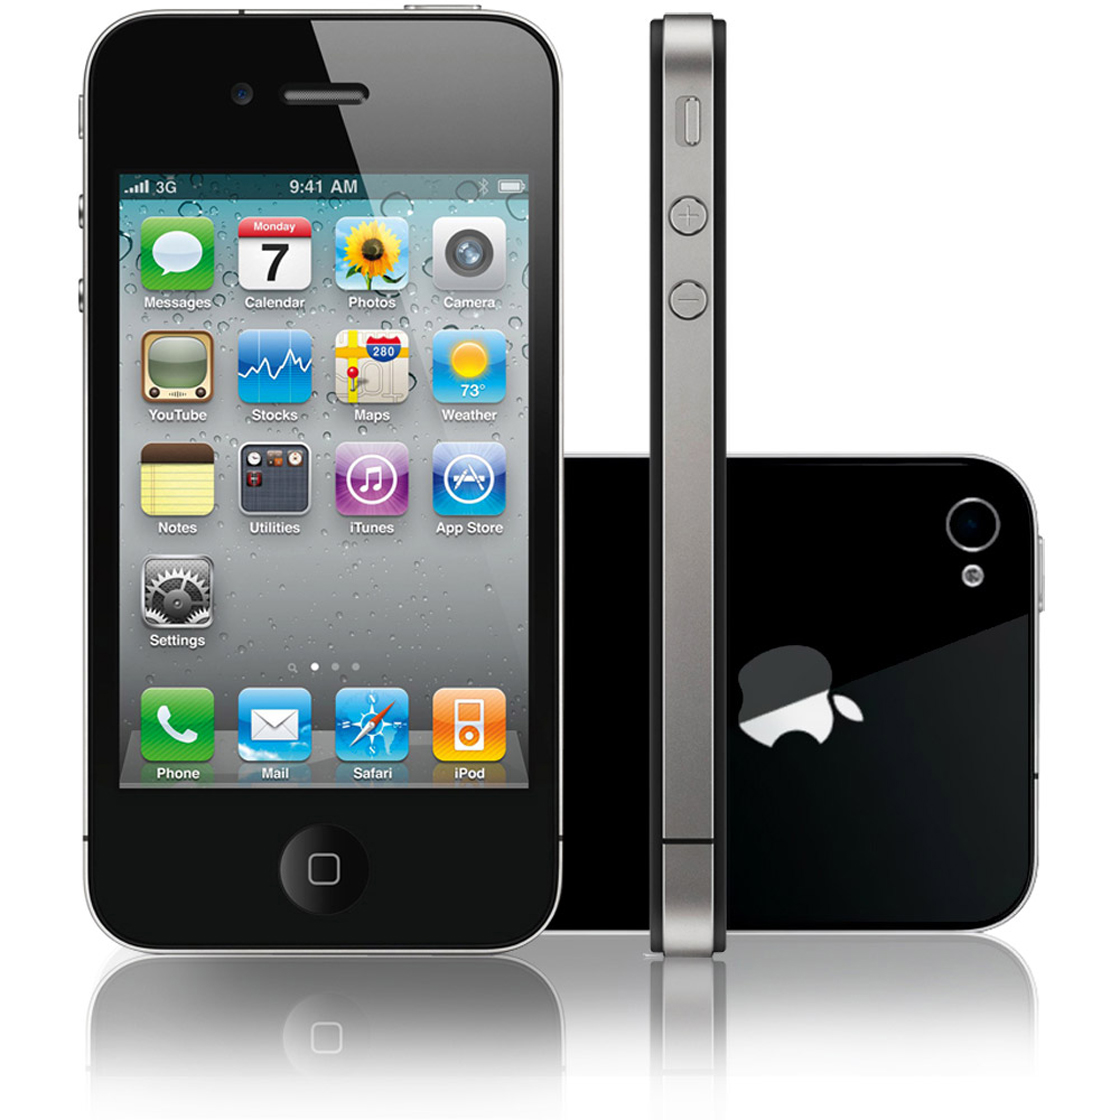 iPhone 4 review: schitterend nieuw ontwerp met haarscherp beeld